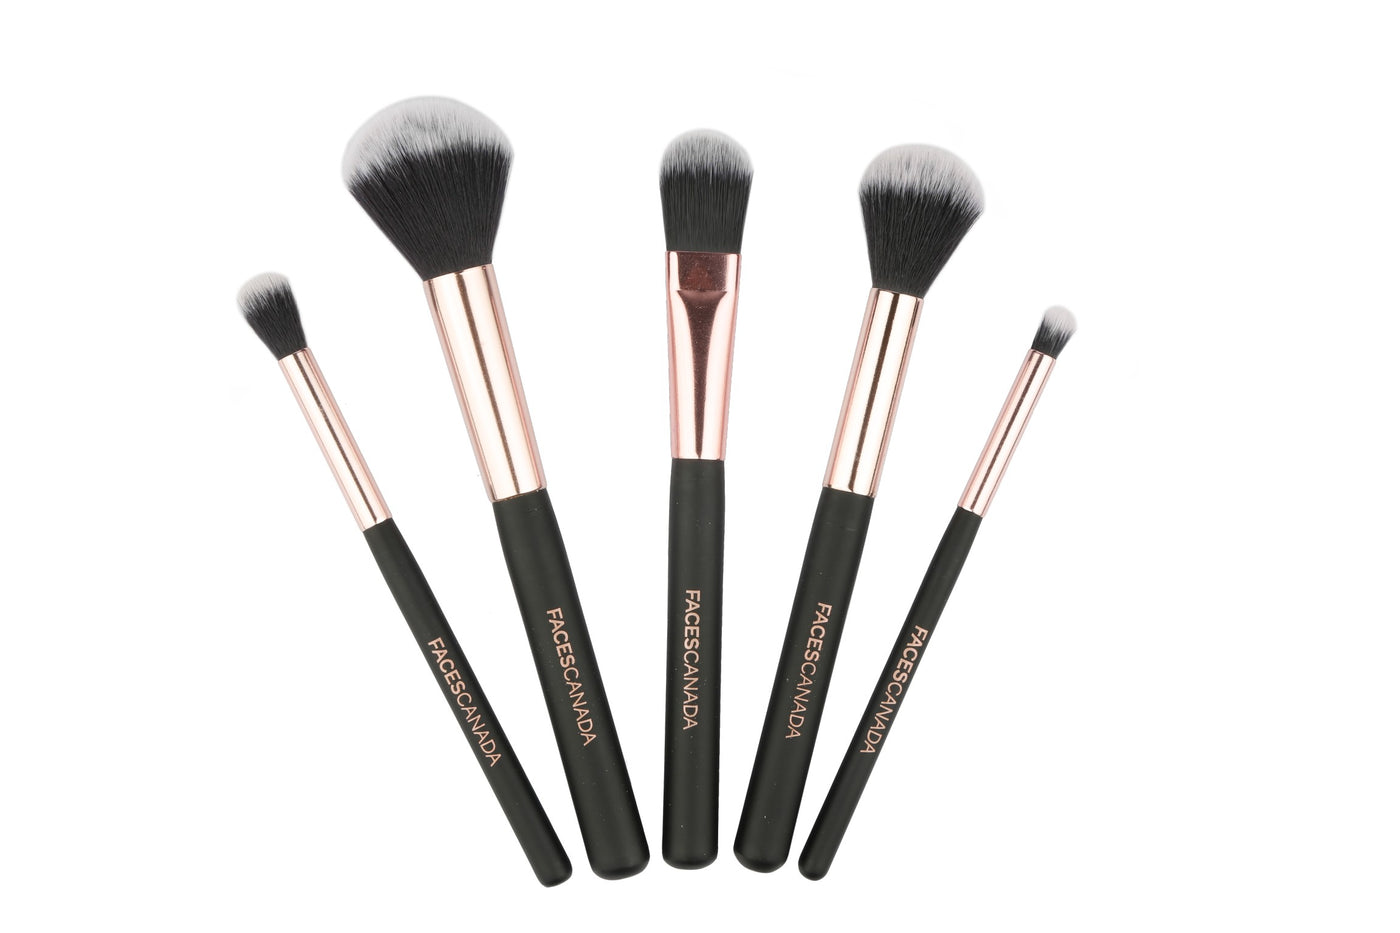 Professional 5-in-1 Makeup Brush Set